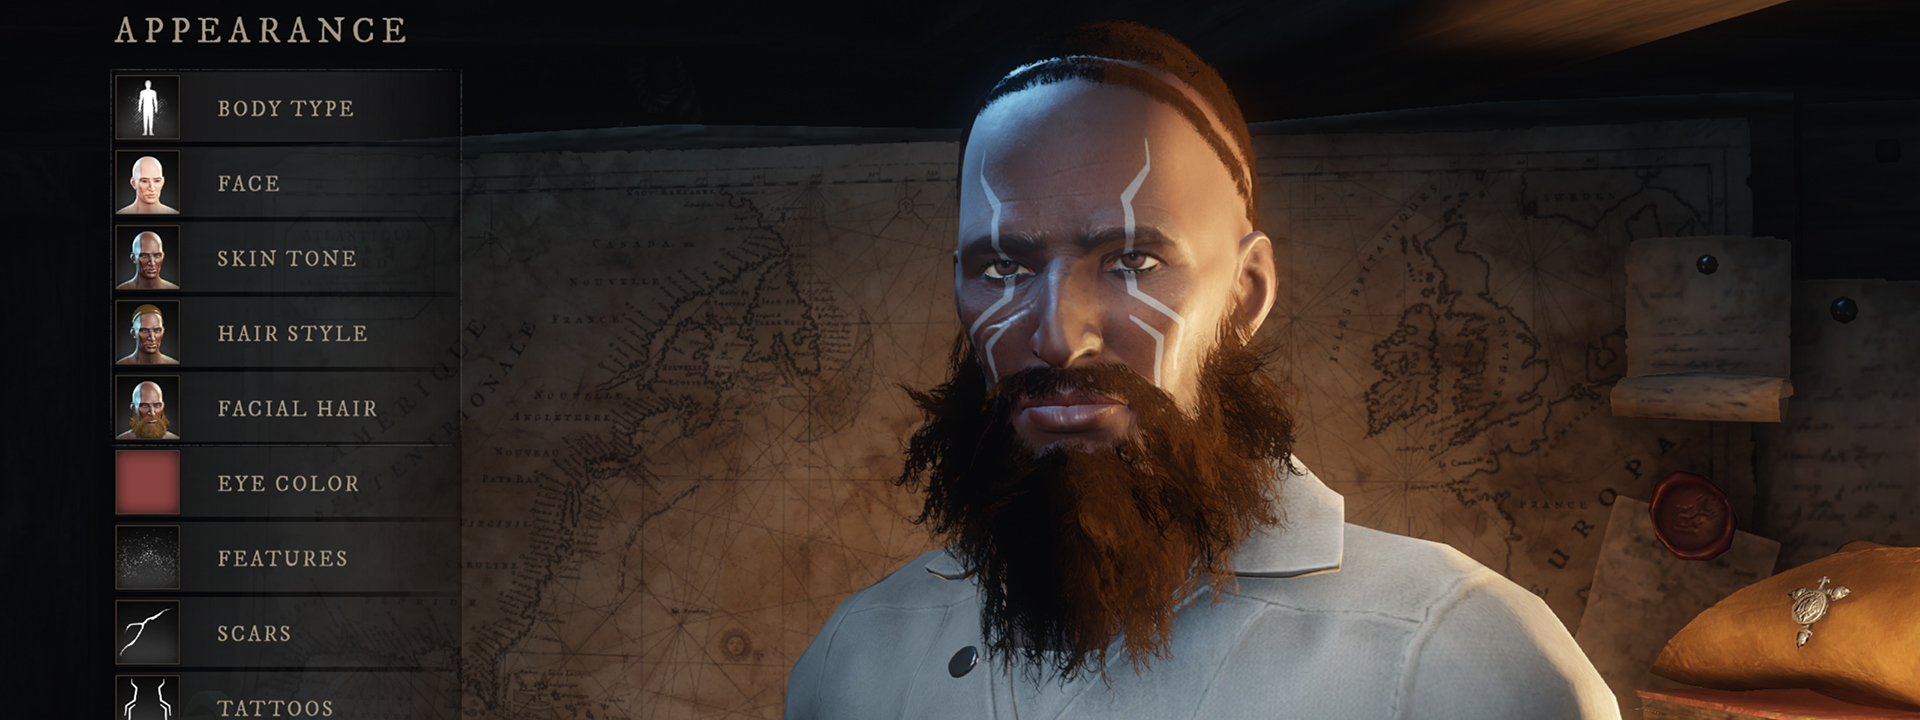 Снимок экрана интерфейса настройки персонажа, на котором изображен человек с темной кожей, дикой бородой и колючими синими татуировками.